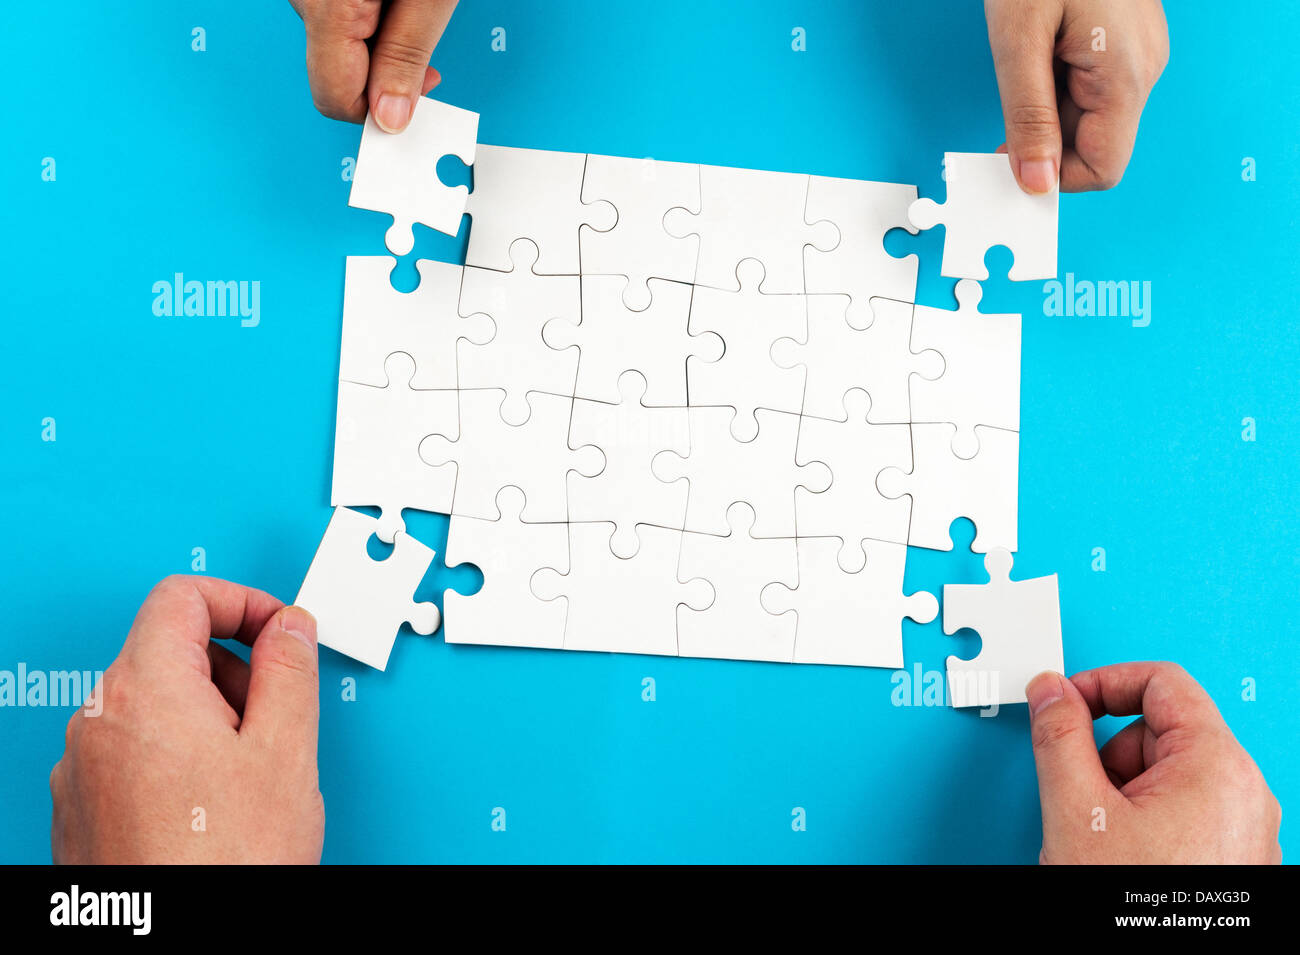 Deux personne holding jigsaw puzzle et les mettre ensemble Banque D'Images